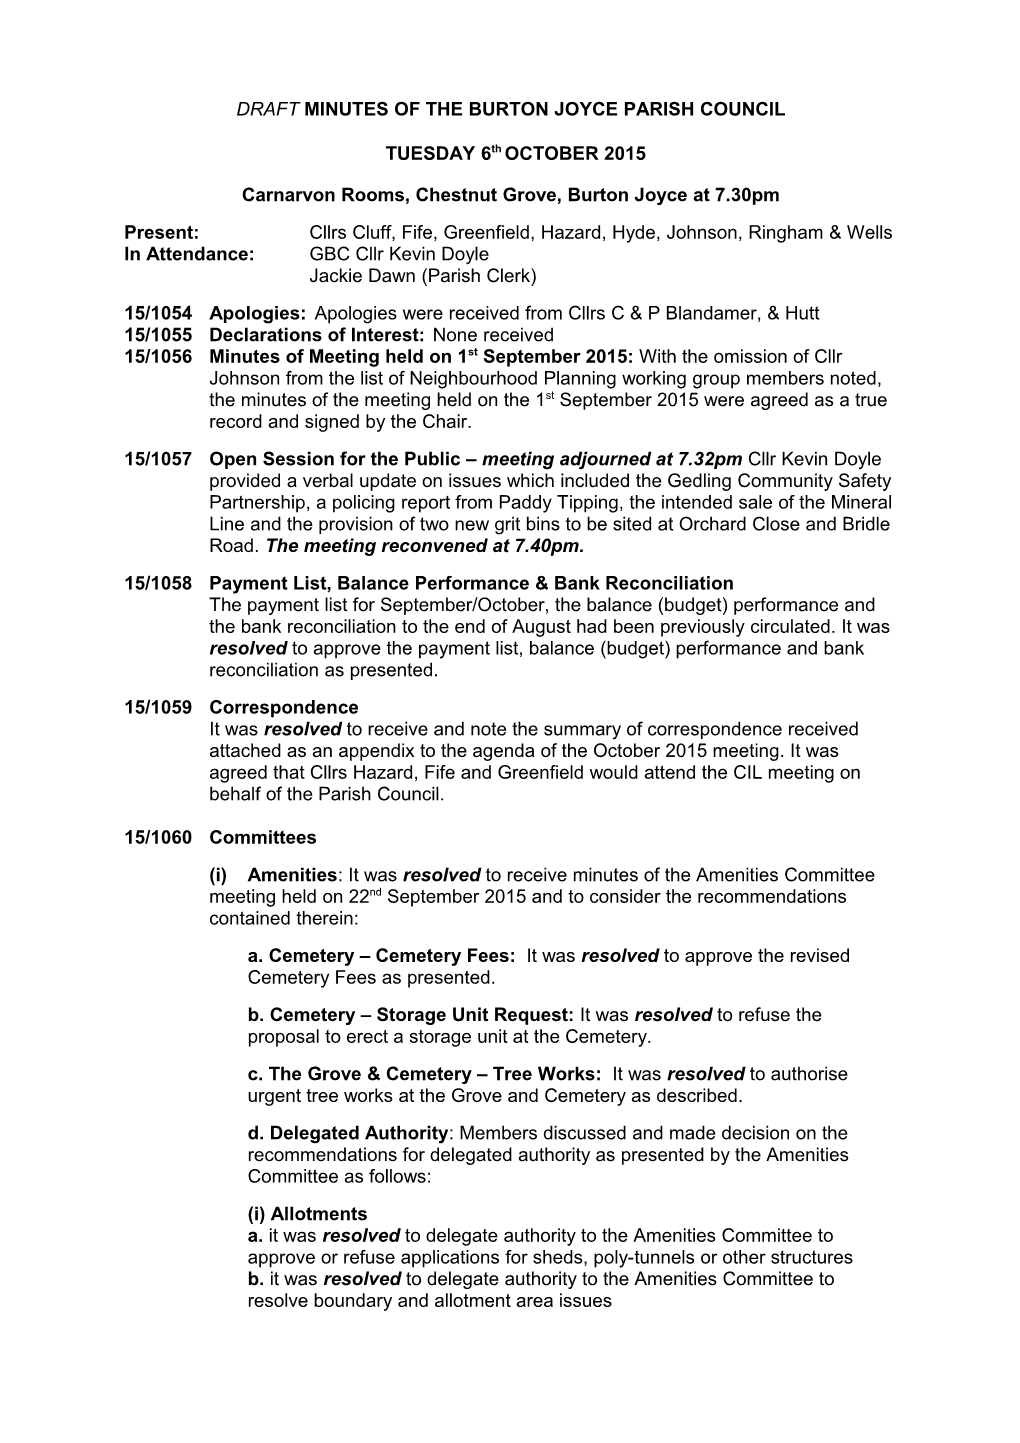 Draft Minutes of the Burton Joyce Parish Council